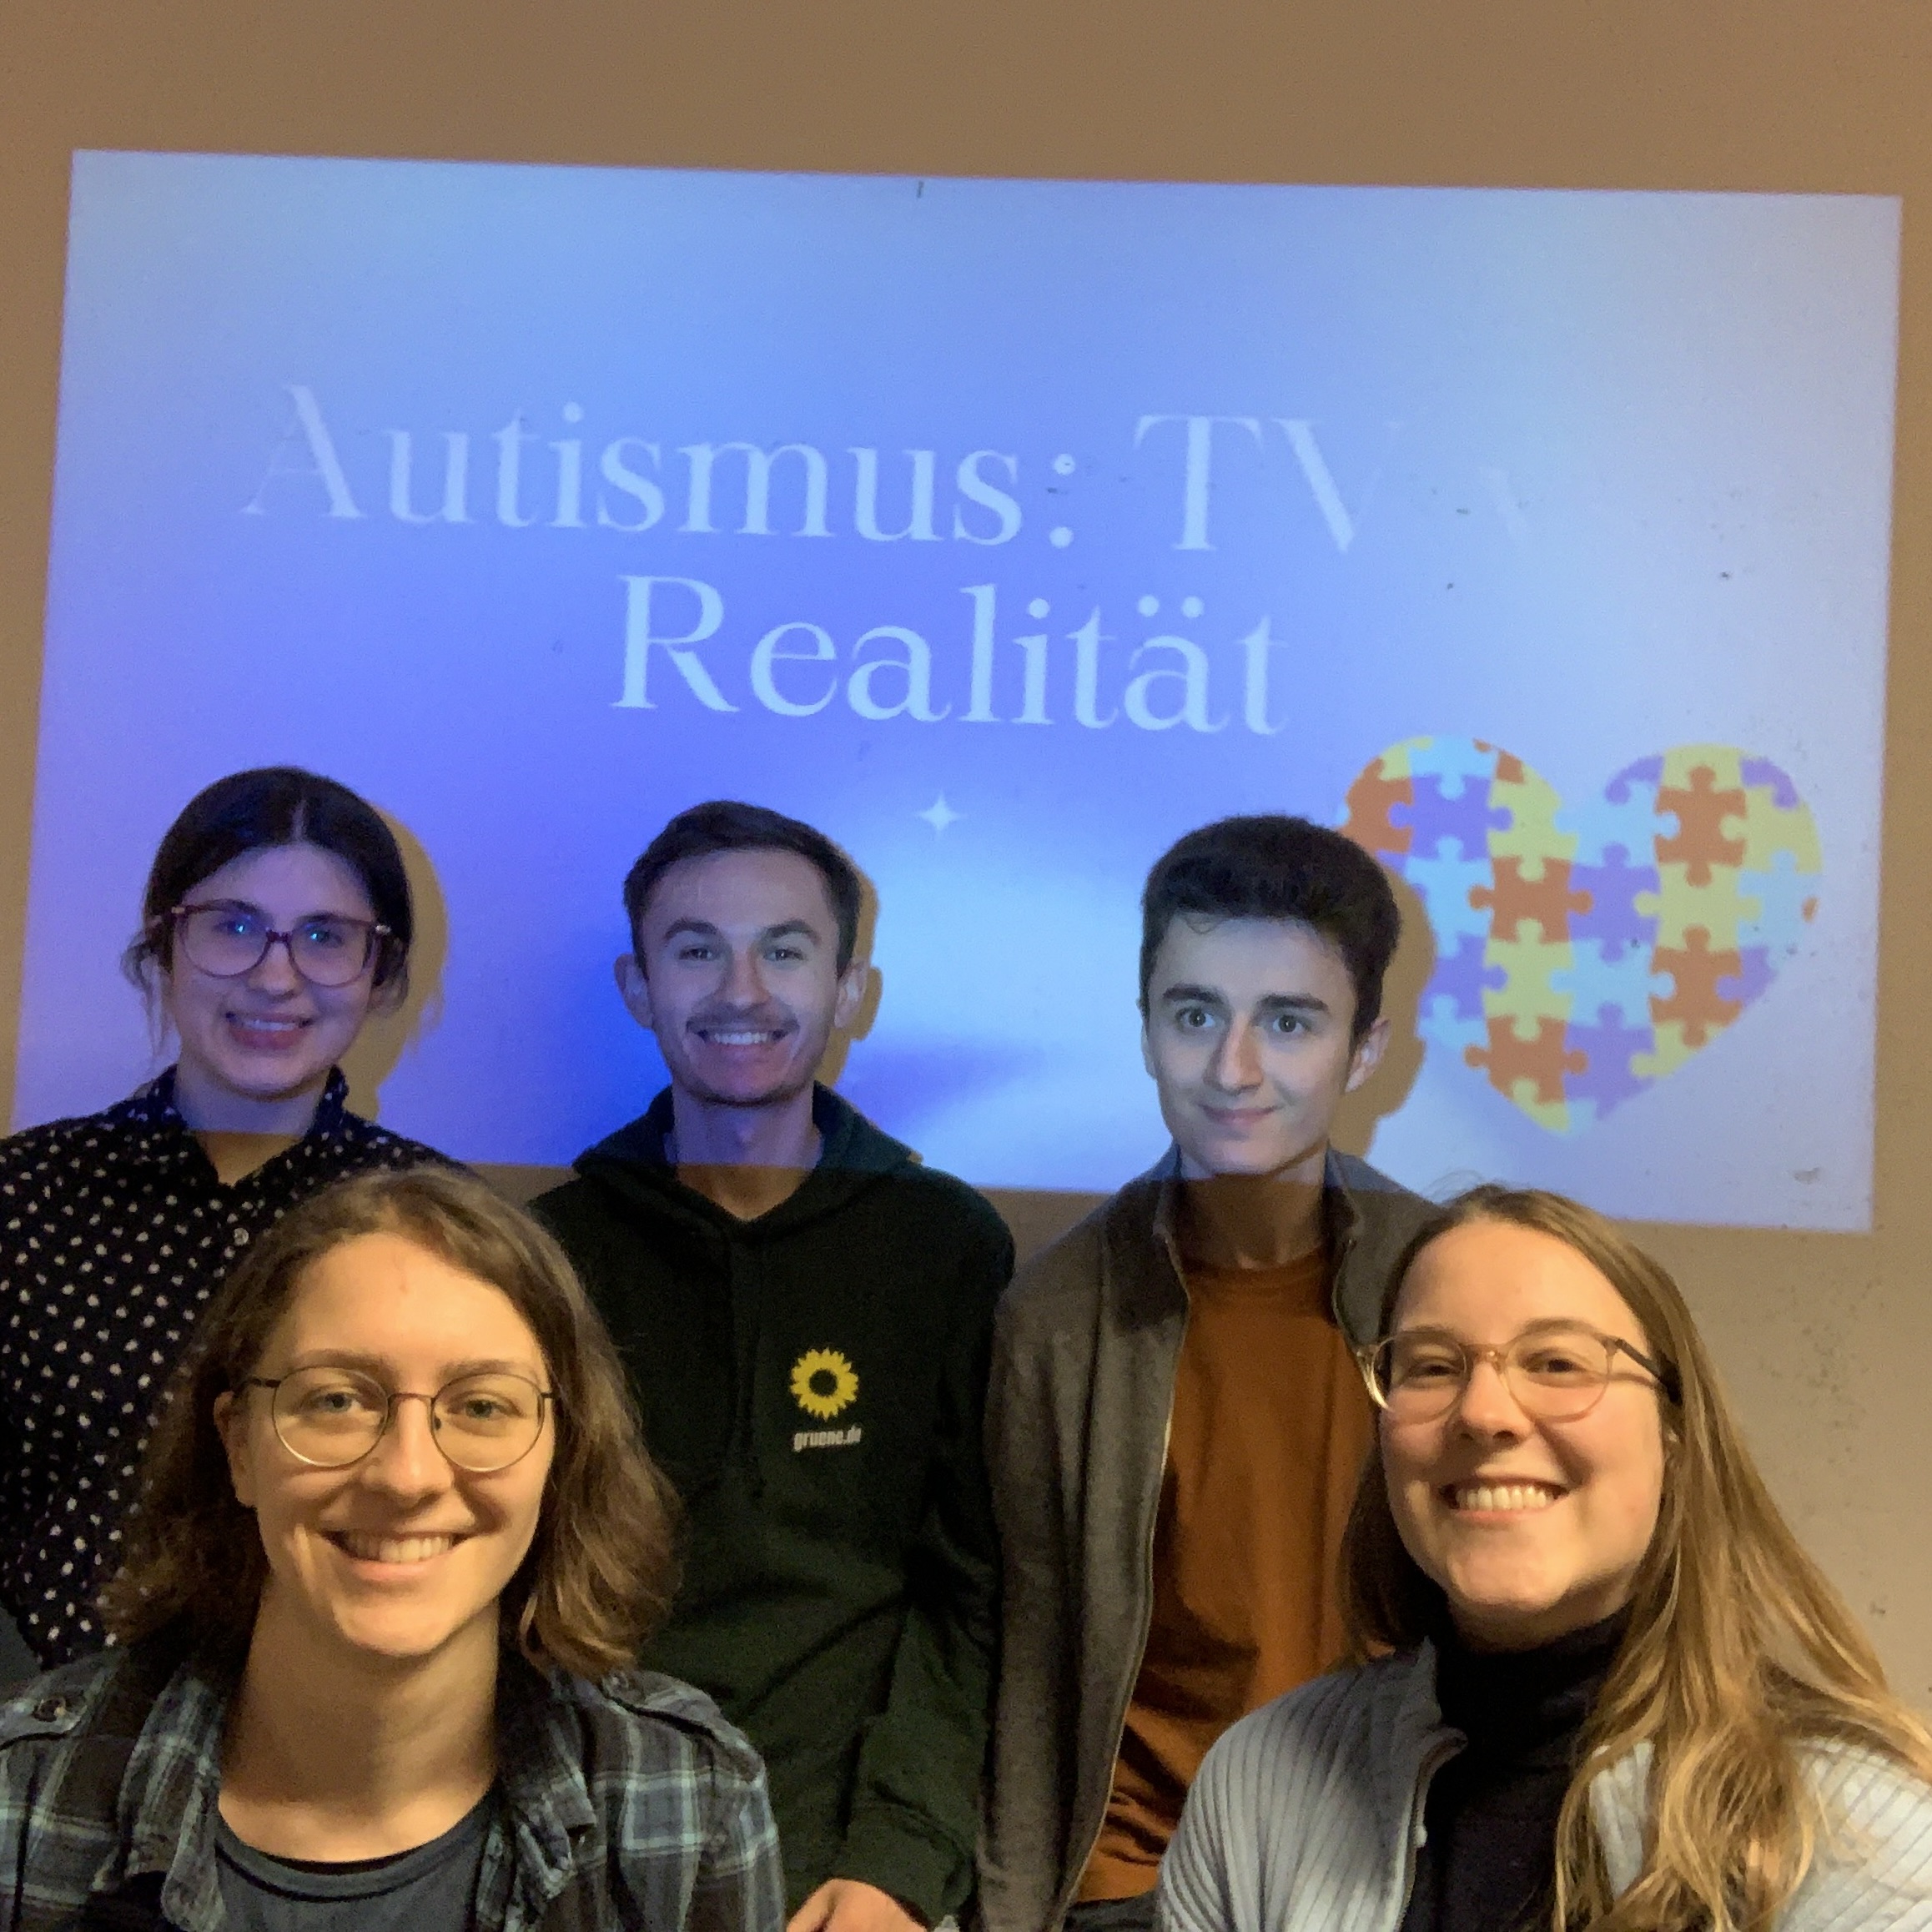 Veranstaltung anlässlich des Weltautismustags: Autismus TV vs. Realität